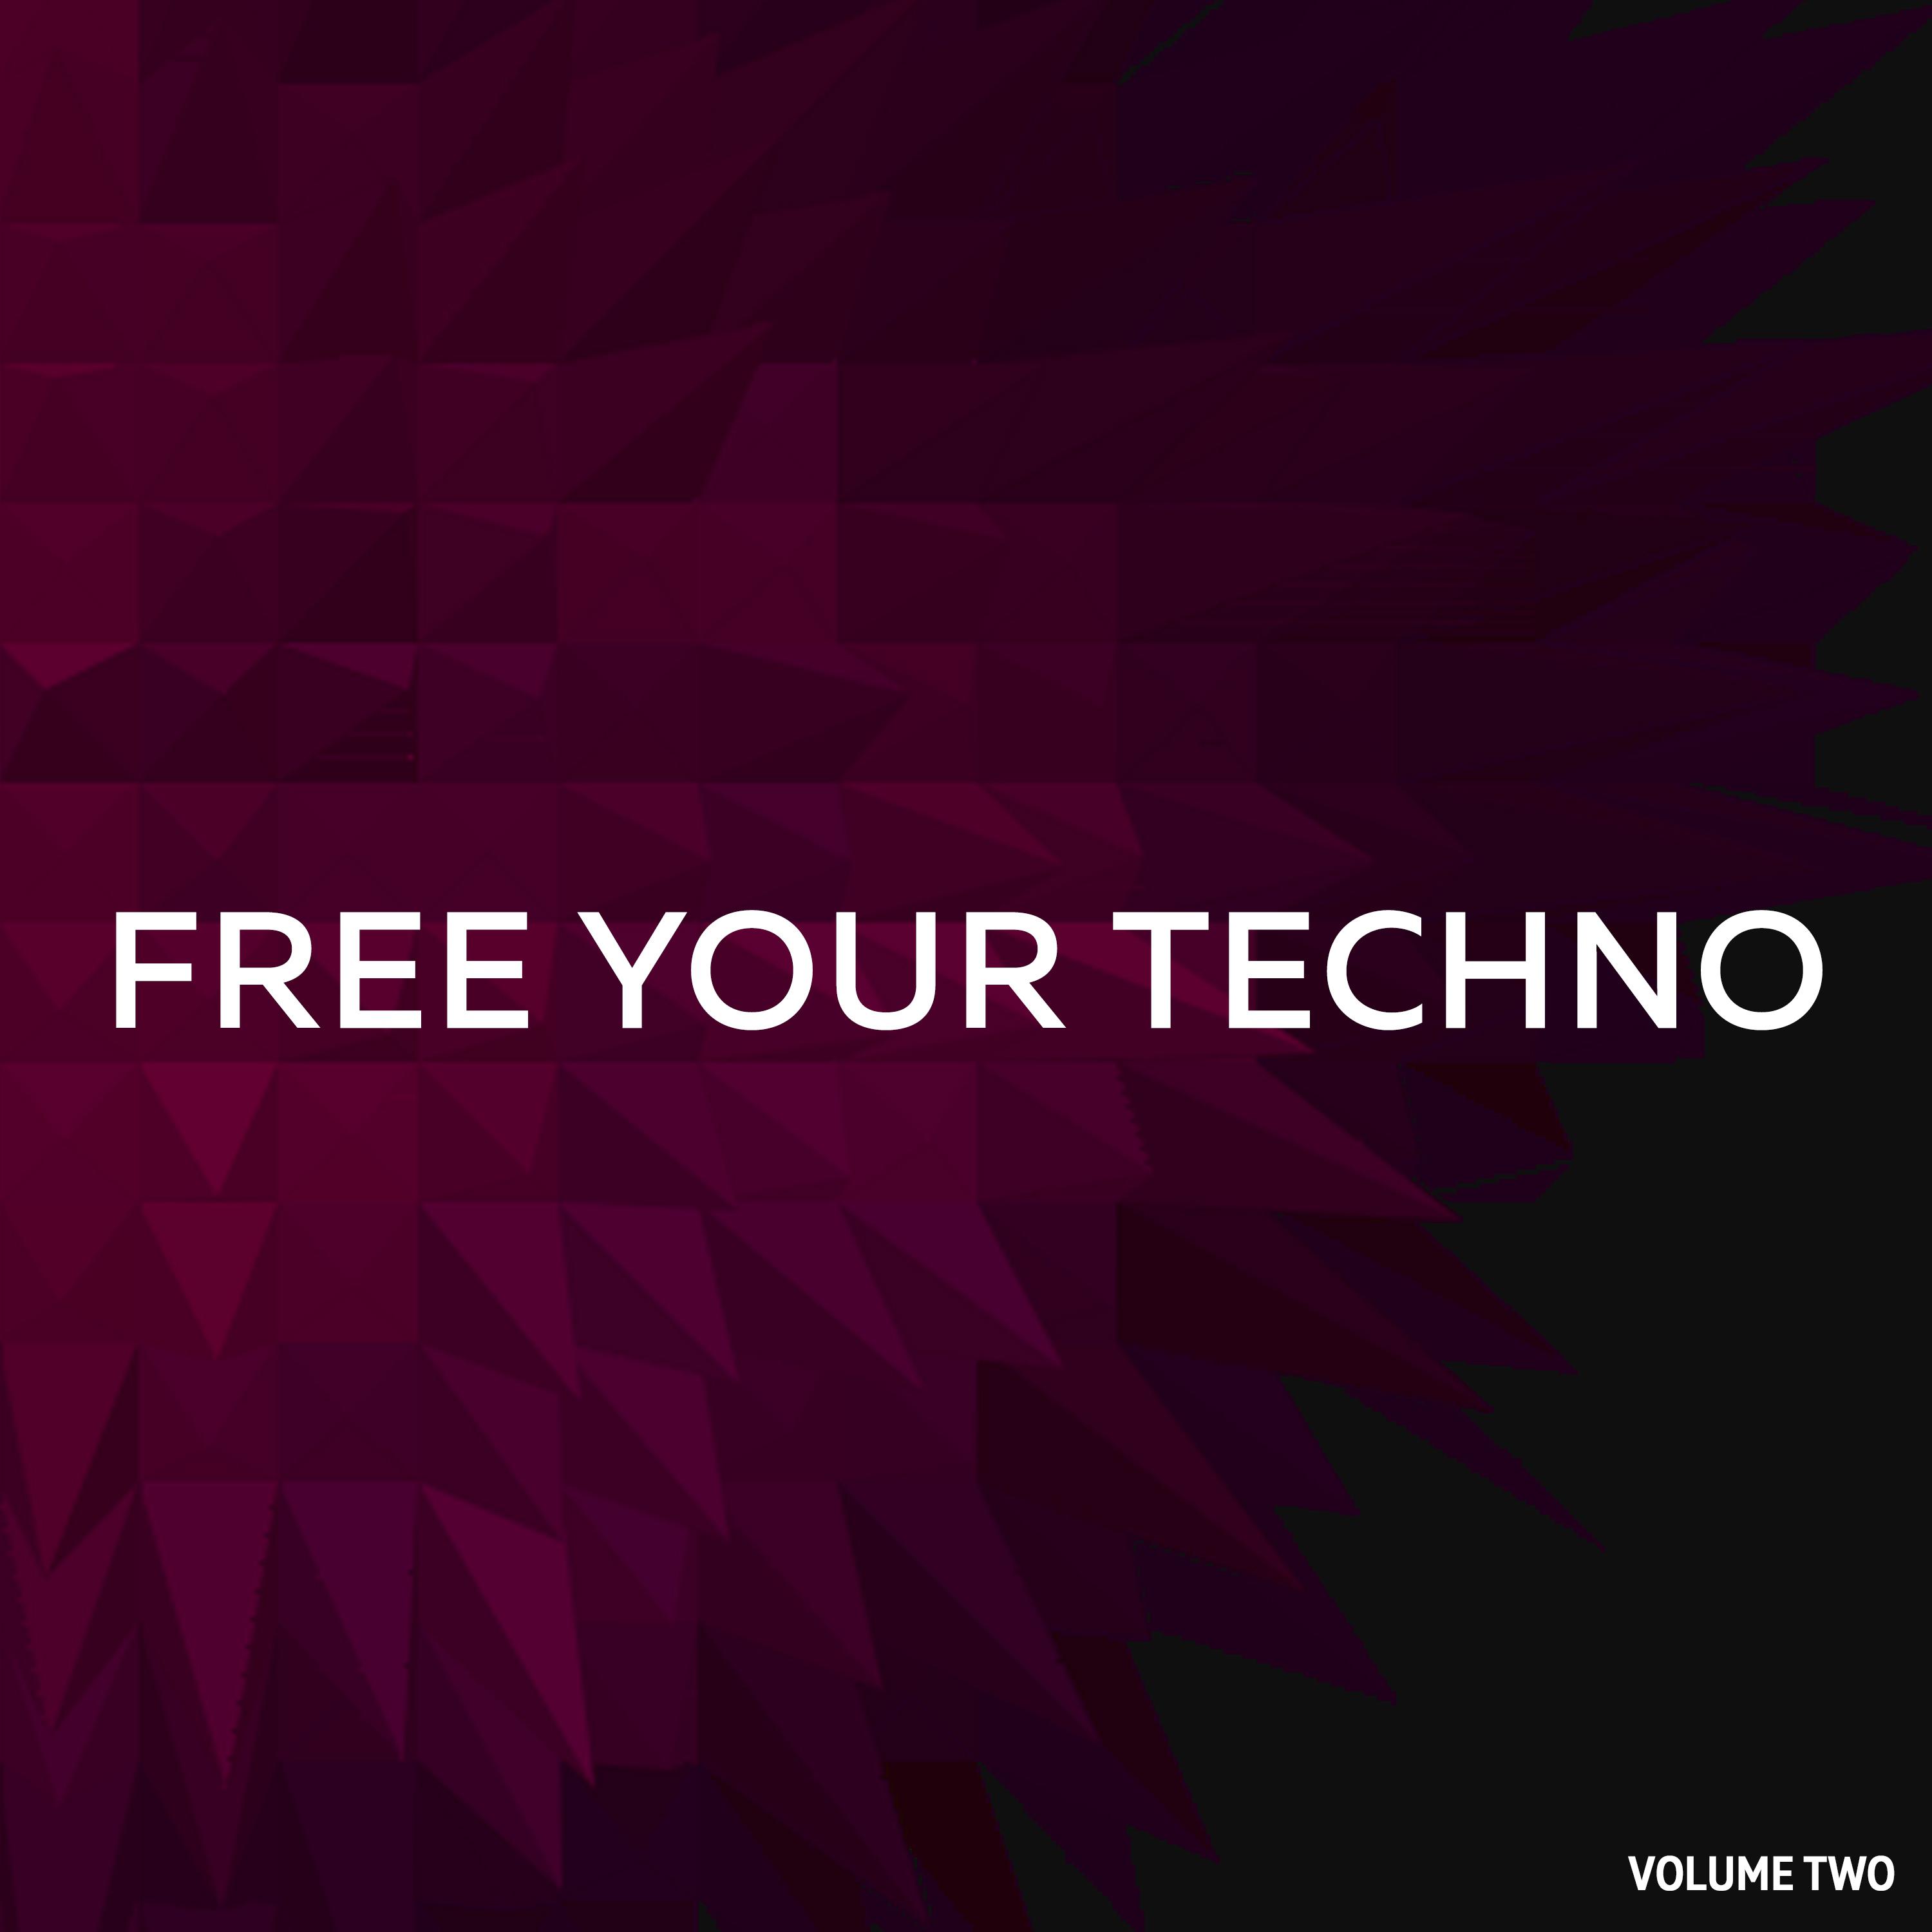 Free Your Techno, Vol. 2